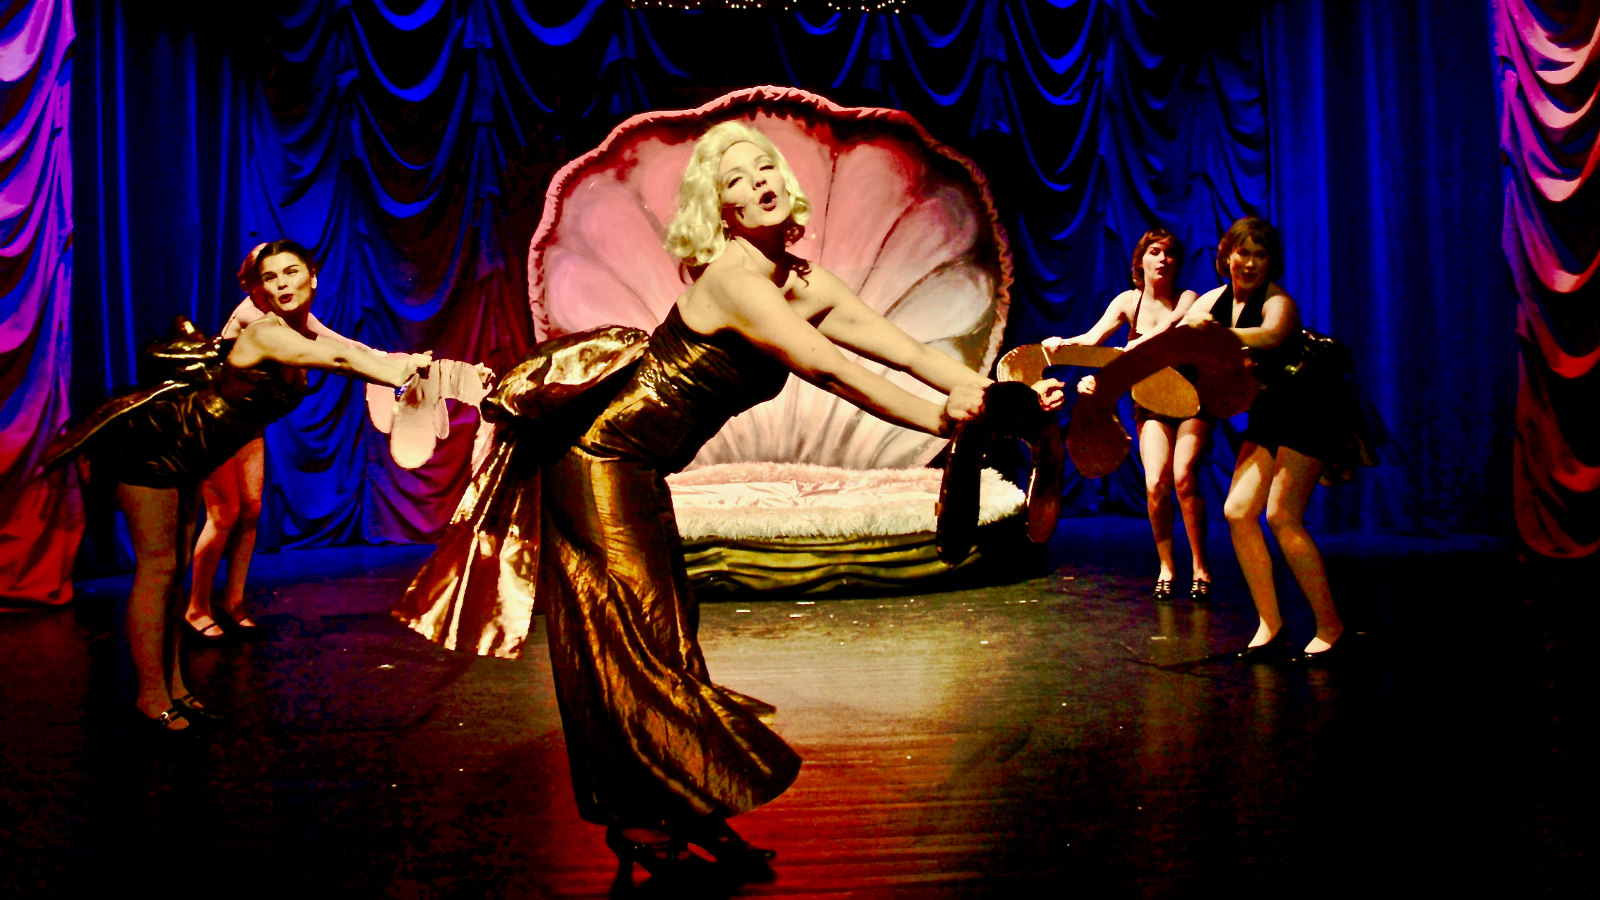 Kuvassa on on Marilyn keskellä kumartuneena laulamassa ja pronssin värisessä puvussa.  Taustalla on molemmin puolin kaksi tanssijaa luhyissä mustissa puvuissa.  Keskellä takana on simpukkamainen, vaaleanpunainen petirakennelma. 